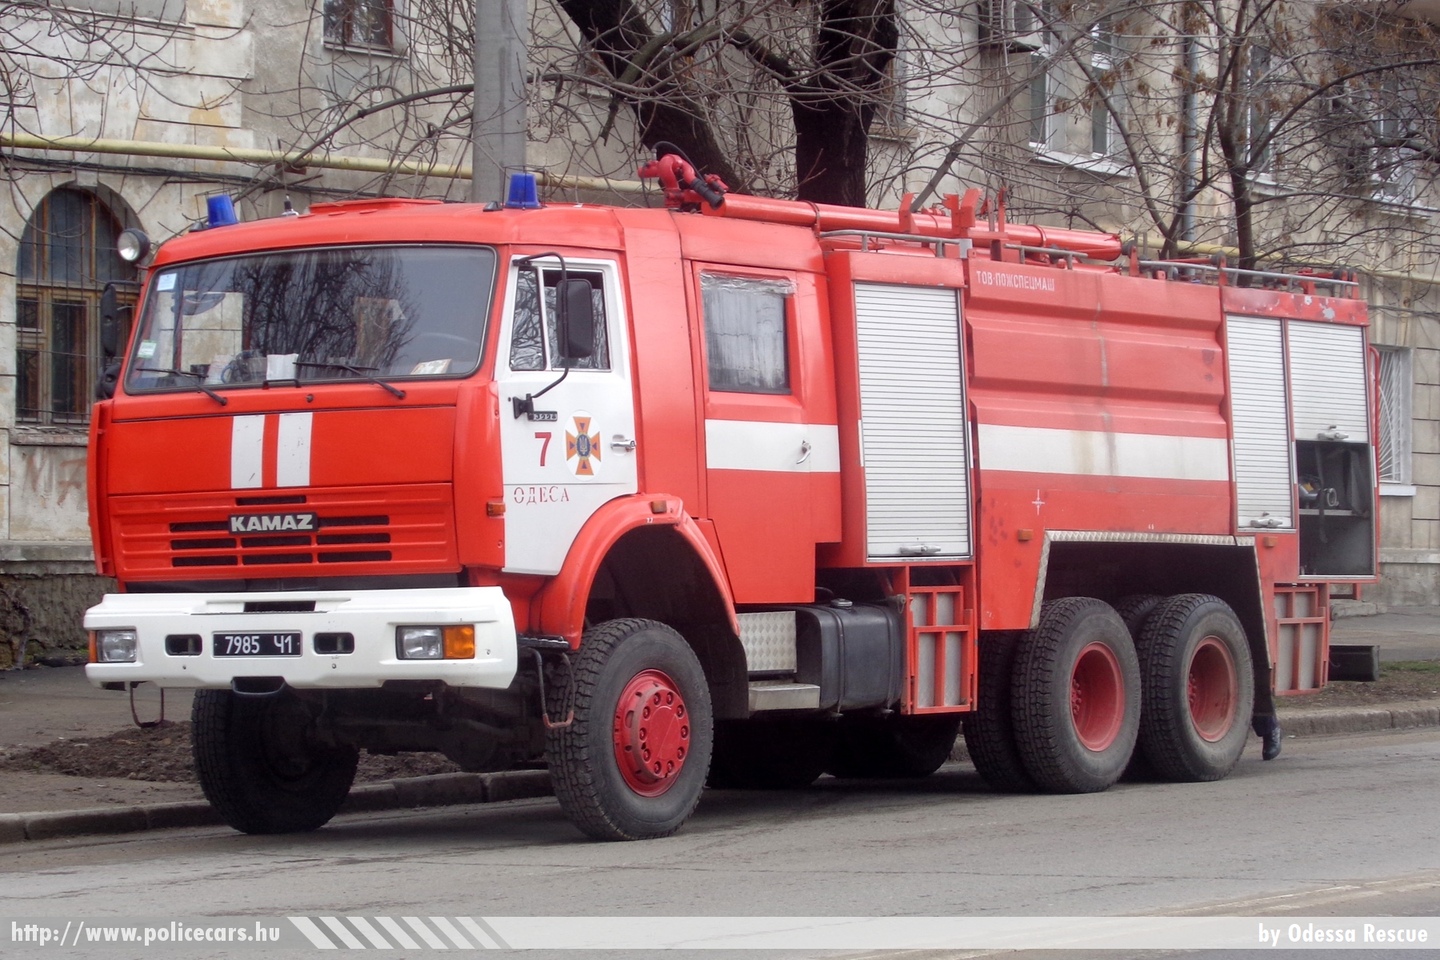 Kamaz, fotó: Odessa Rescue
Keywords: tûzoltó tûzoltóautó tûzoltóság ukrán Ukrajna fire firetruck Ukraine ukrainian